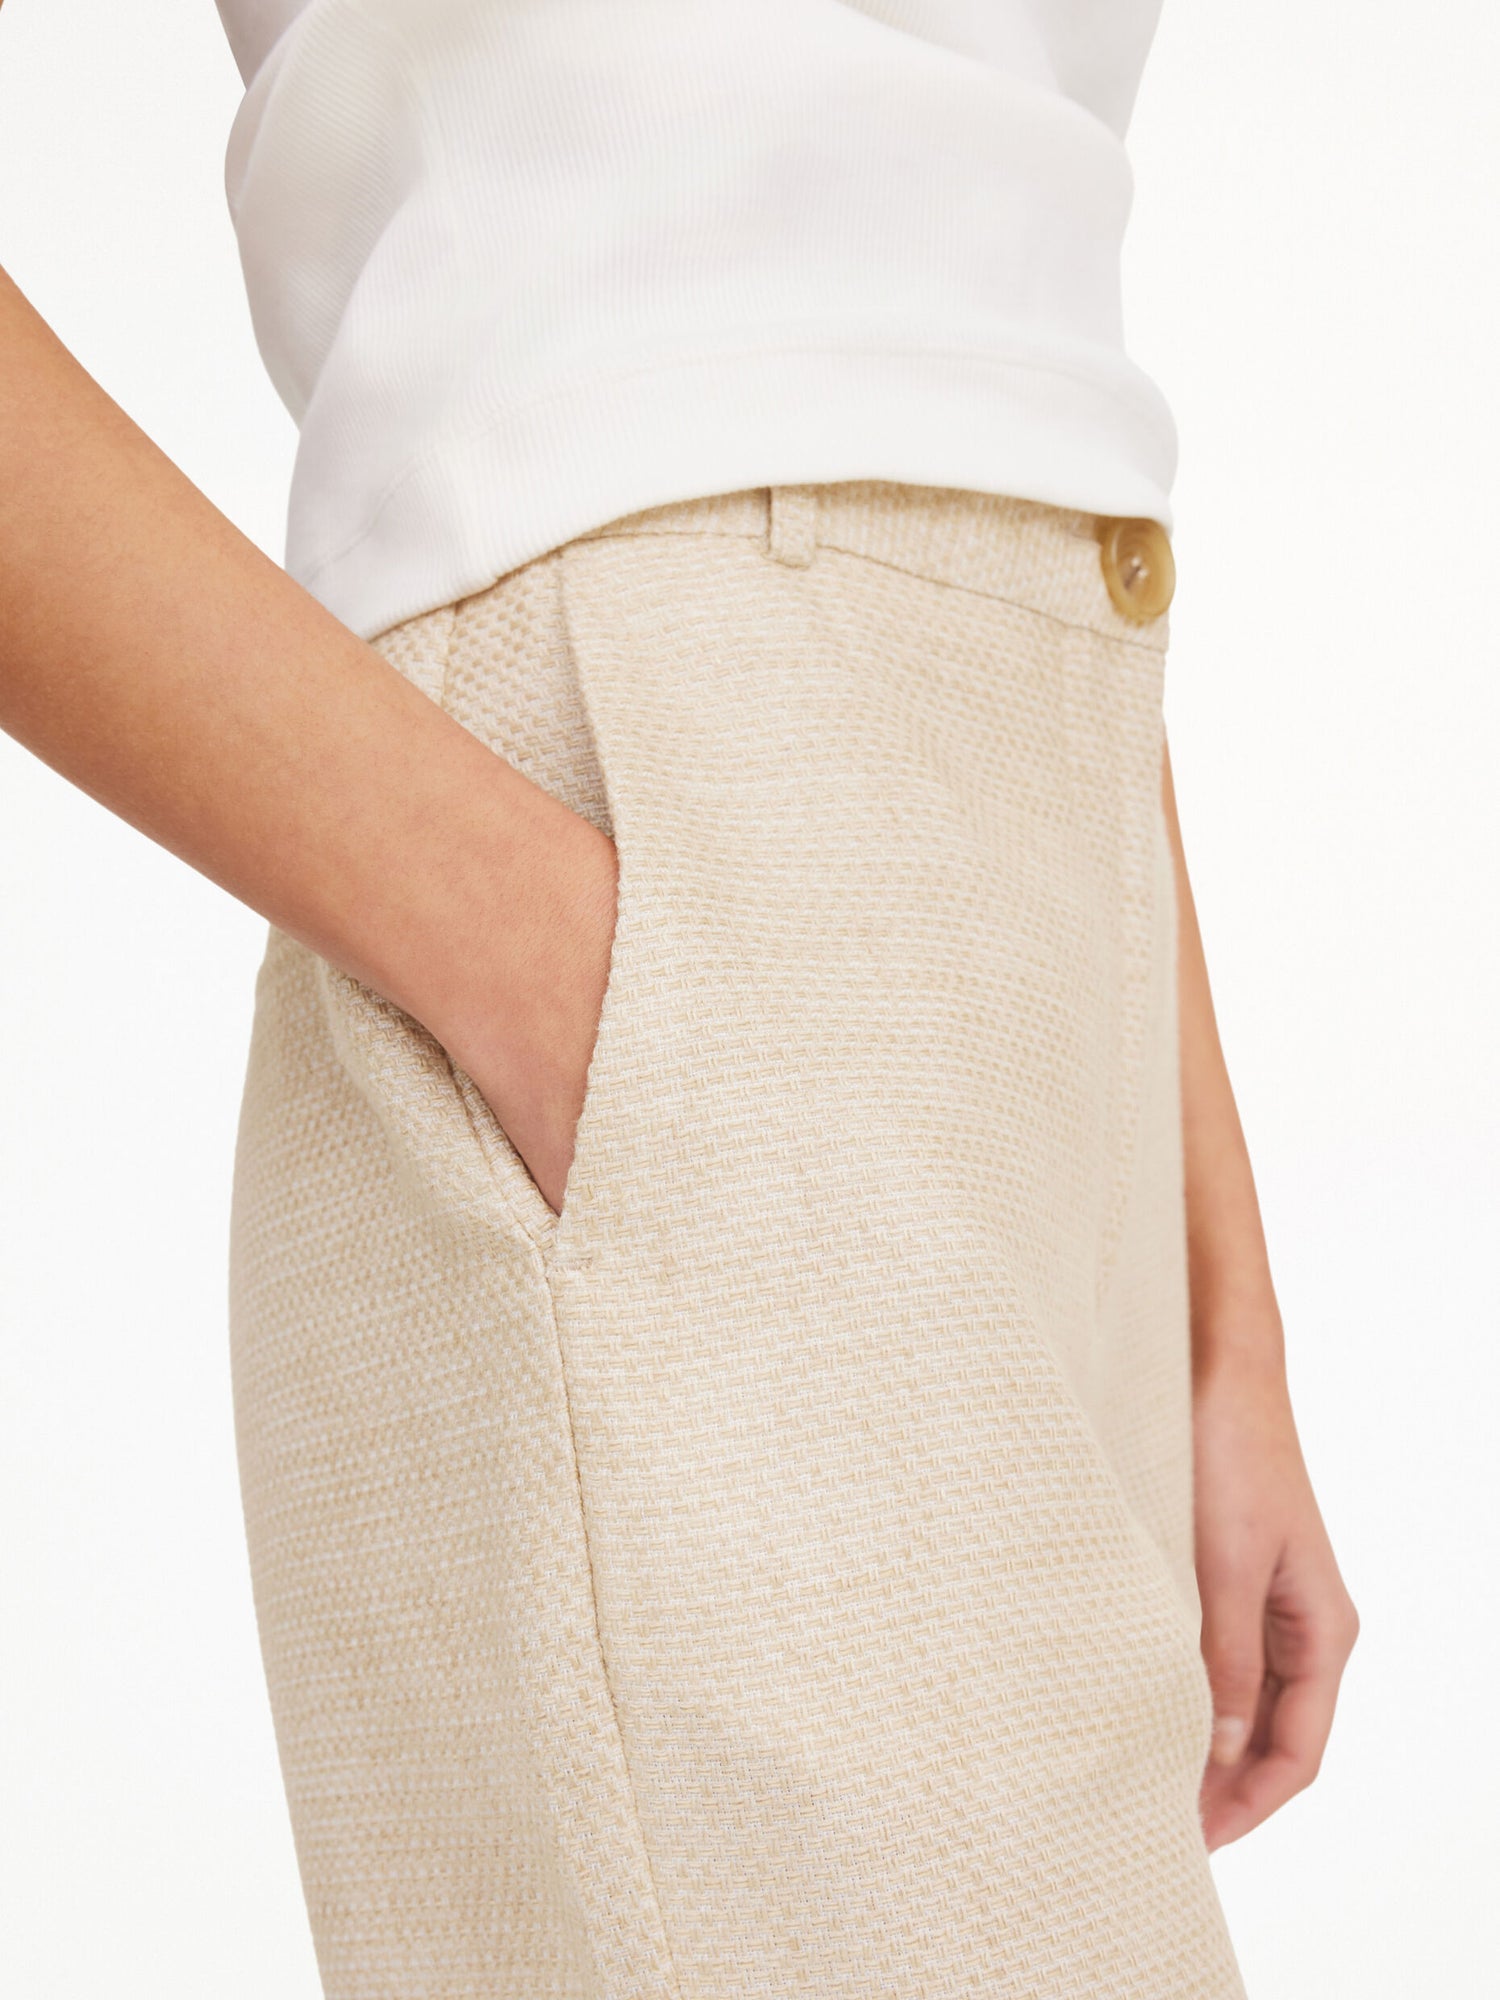 CARAS pants, wood colour